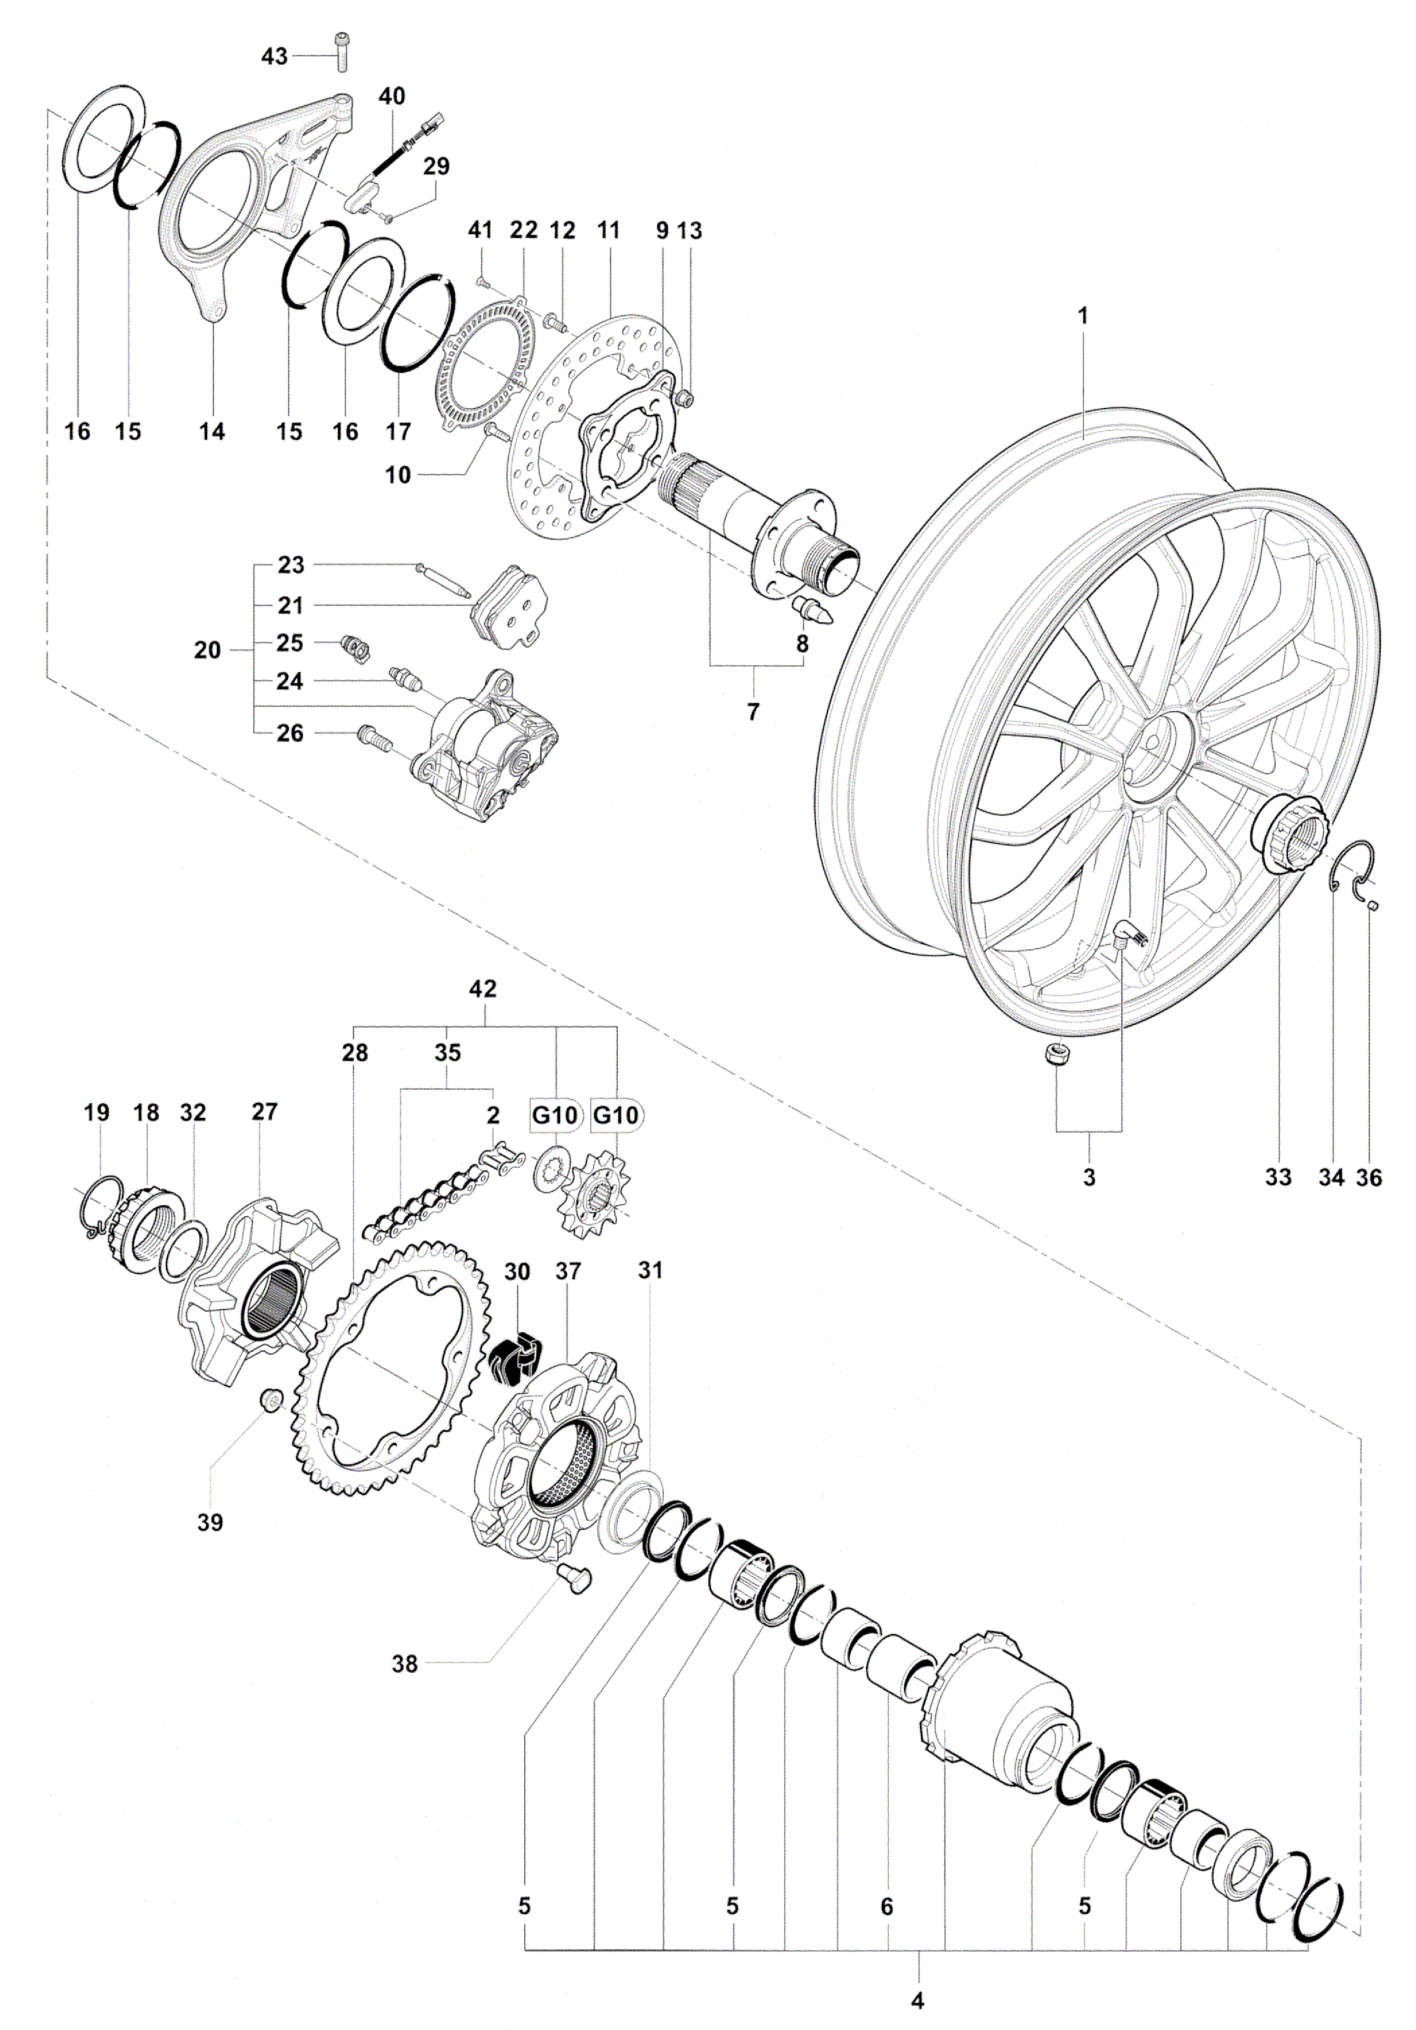 Rear Wheel Assembly


